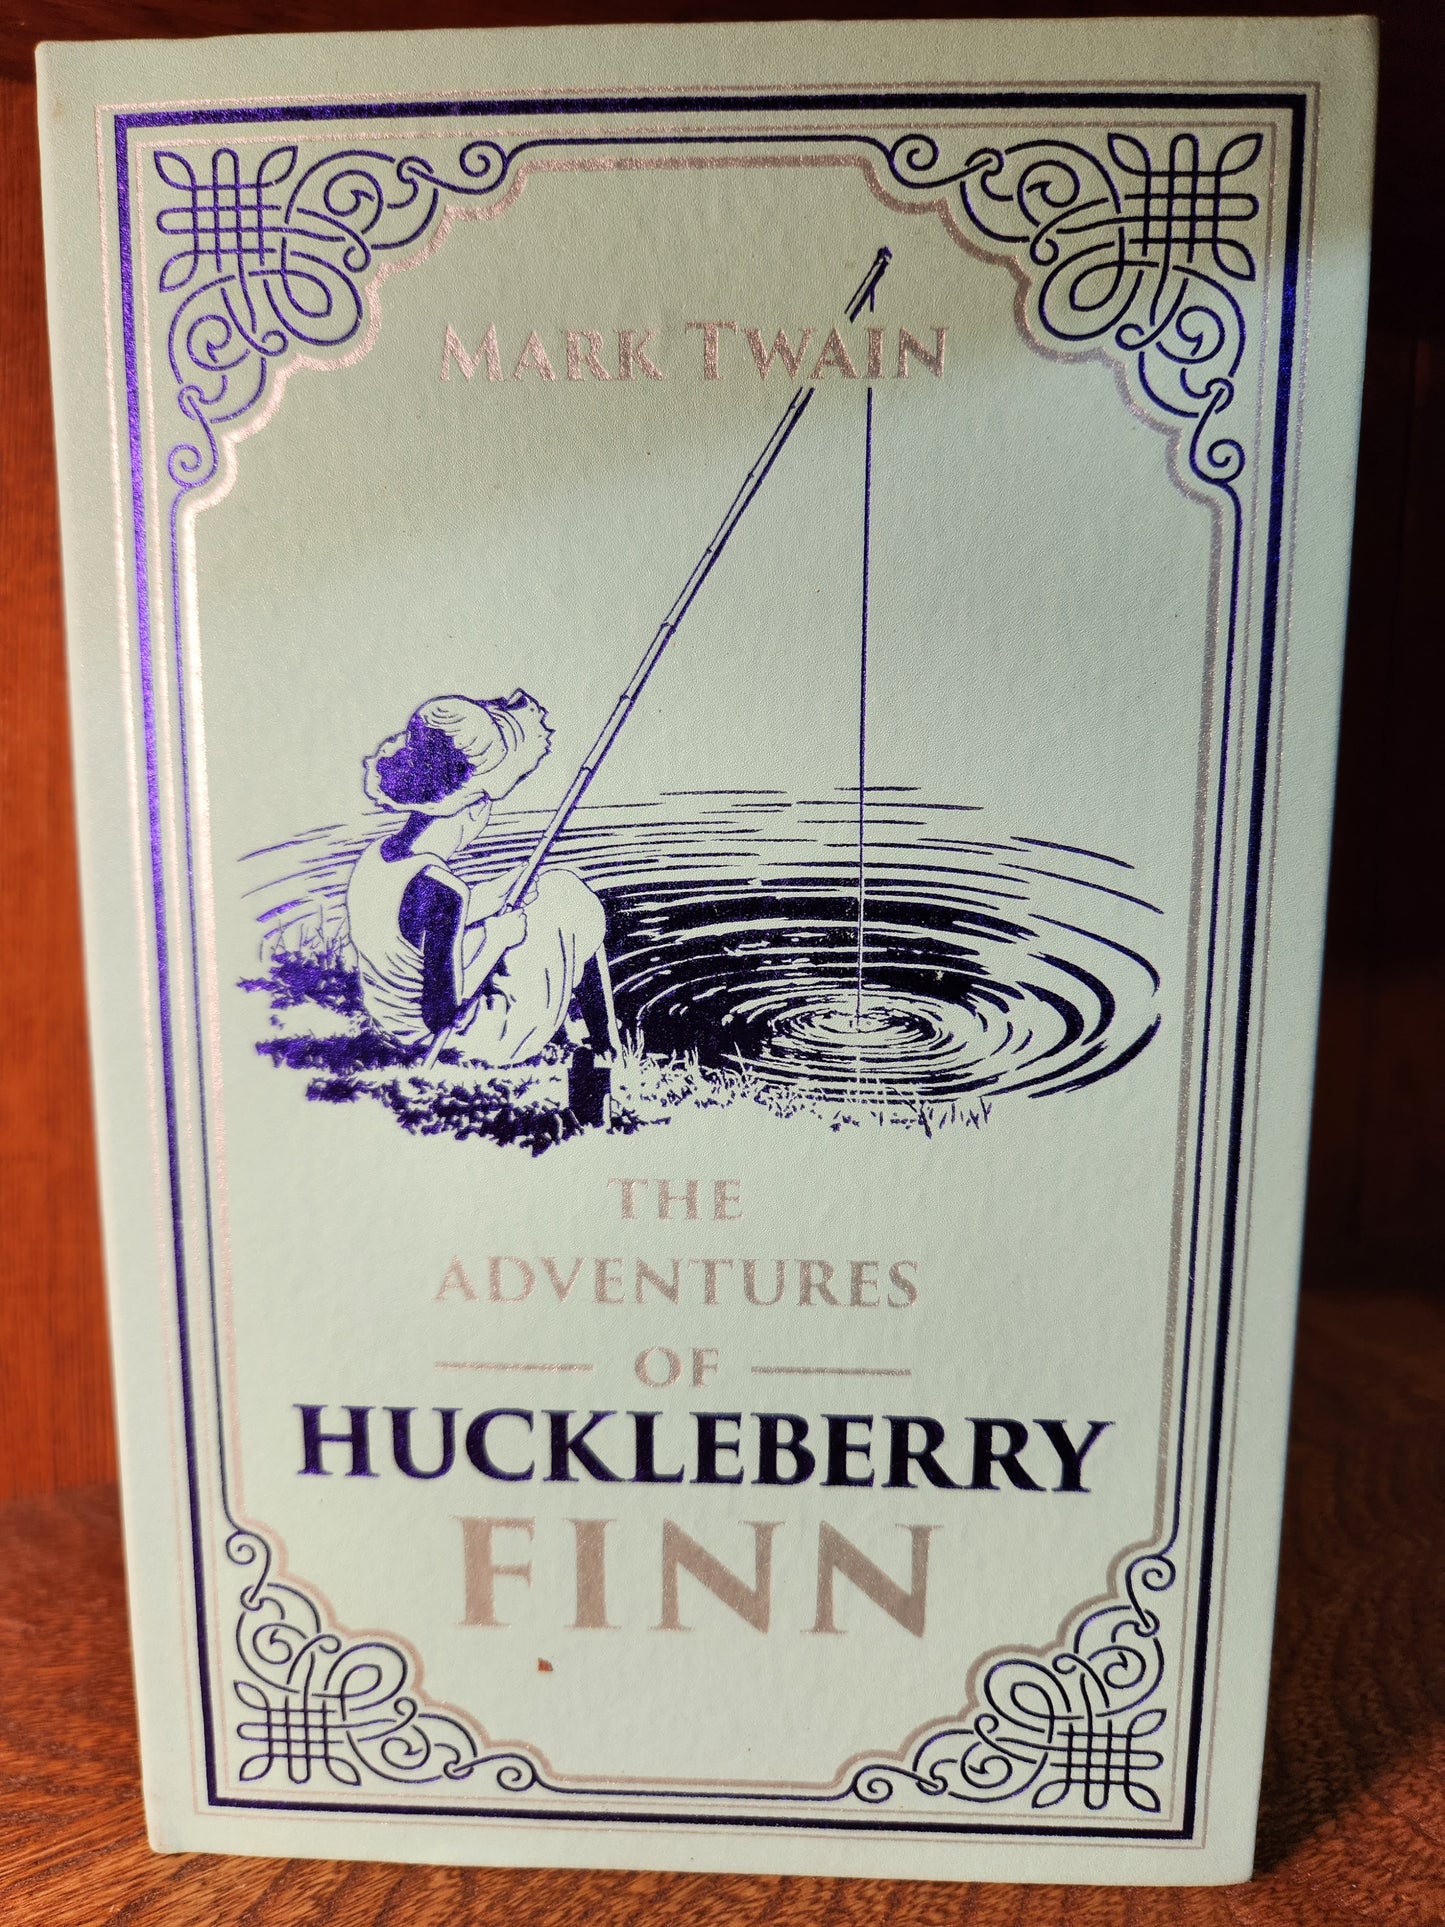 The Adventures of Huckleberry Finn; Mark Twain